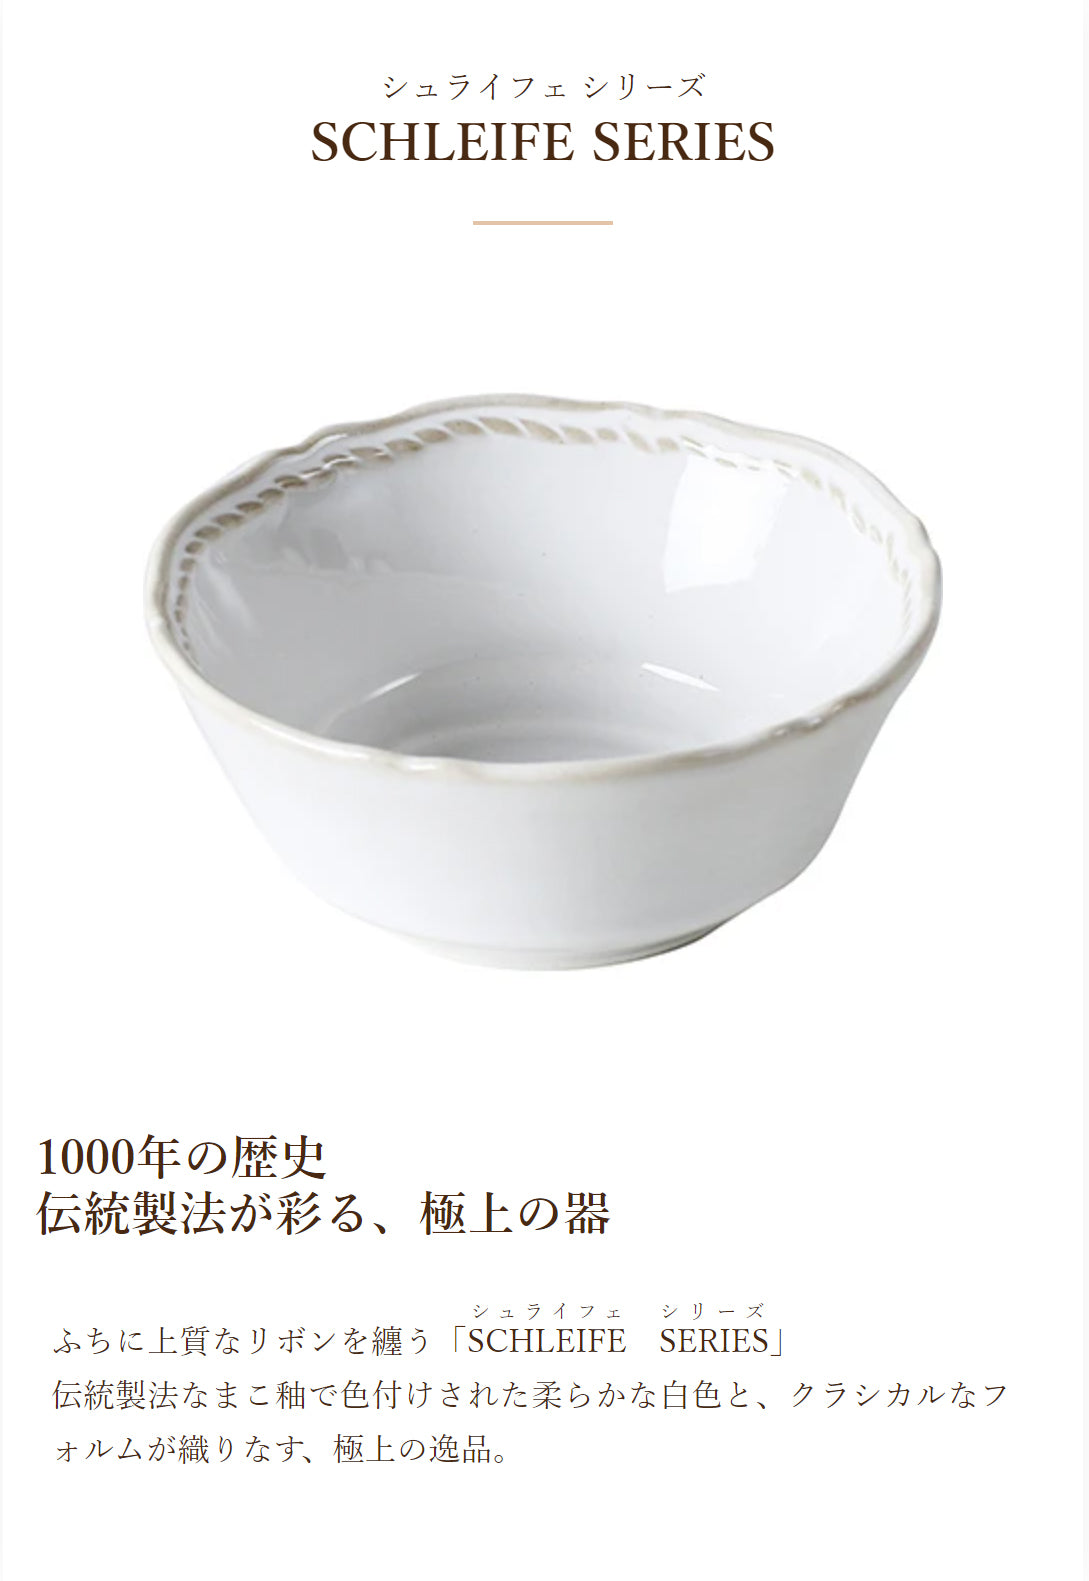 小鉢皿